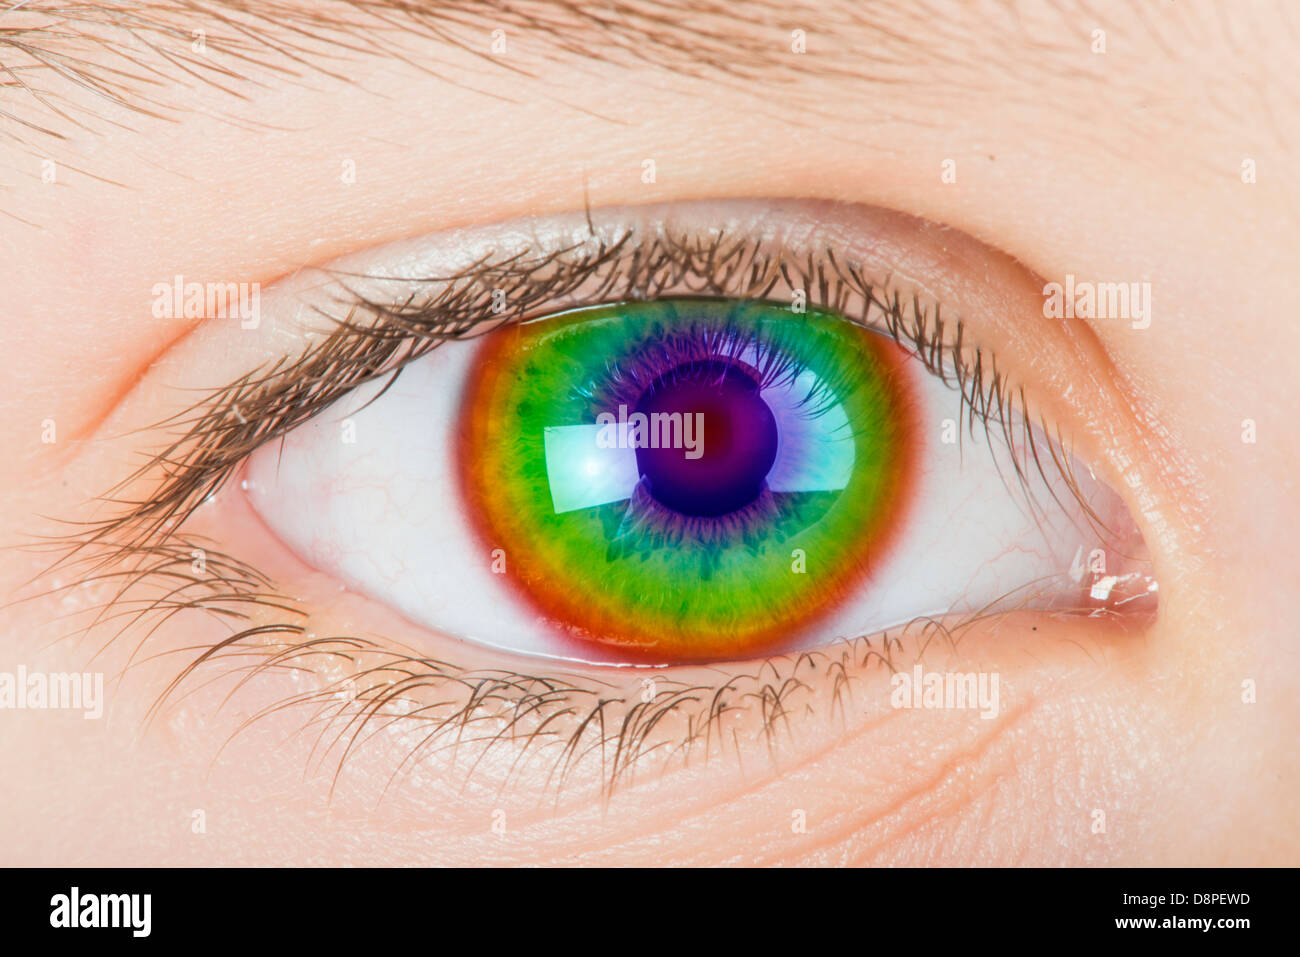 Occhio umano e lo spettro di luce di colori. Close up studio shot Foto Stock